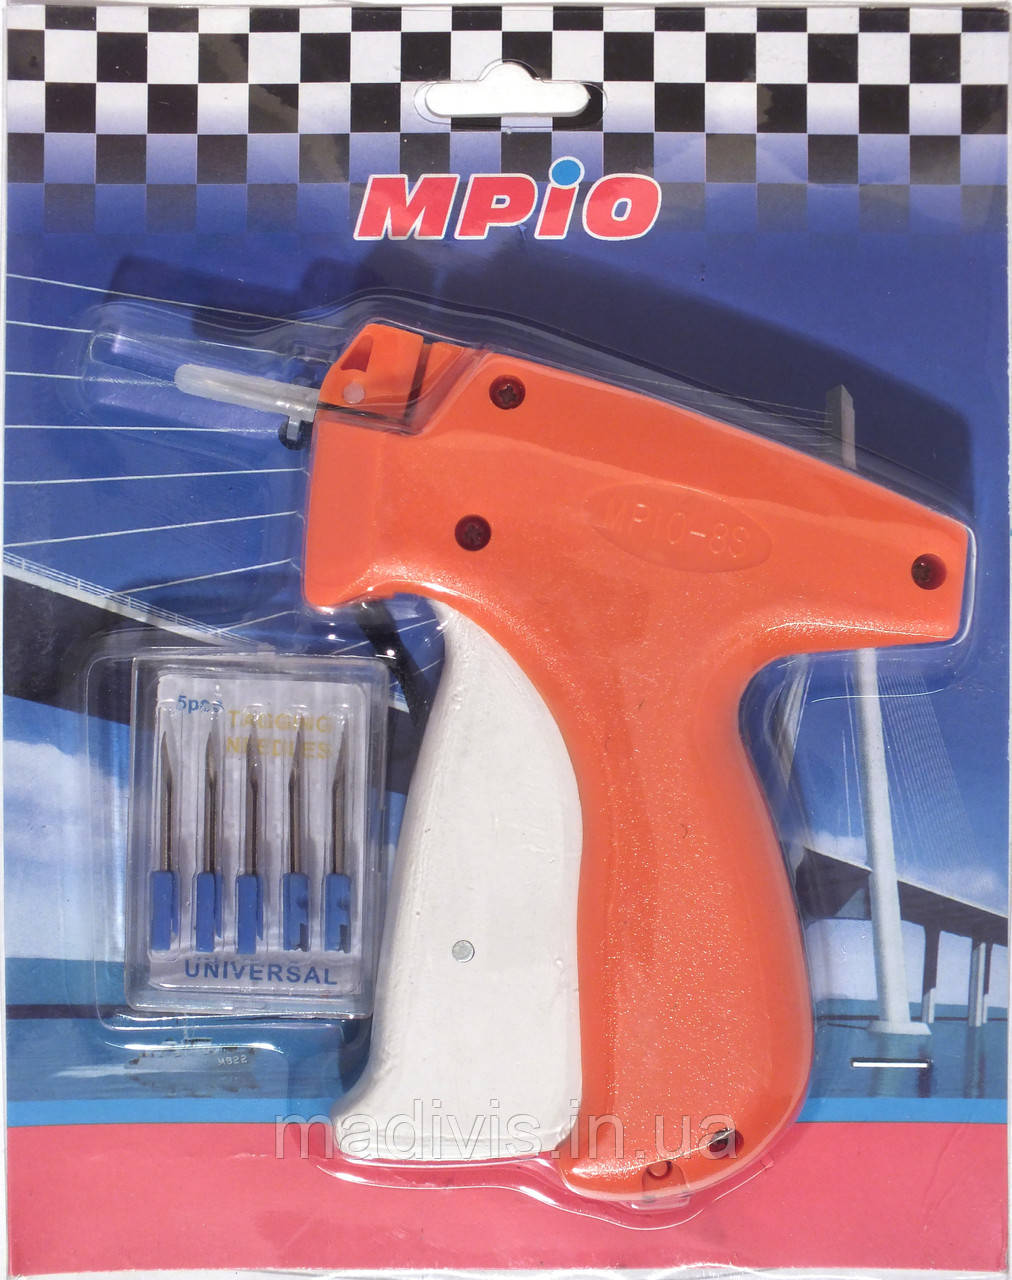 Пістолет для бирок "MPIO" + 5 запасних голок!